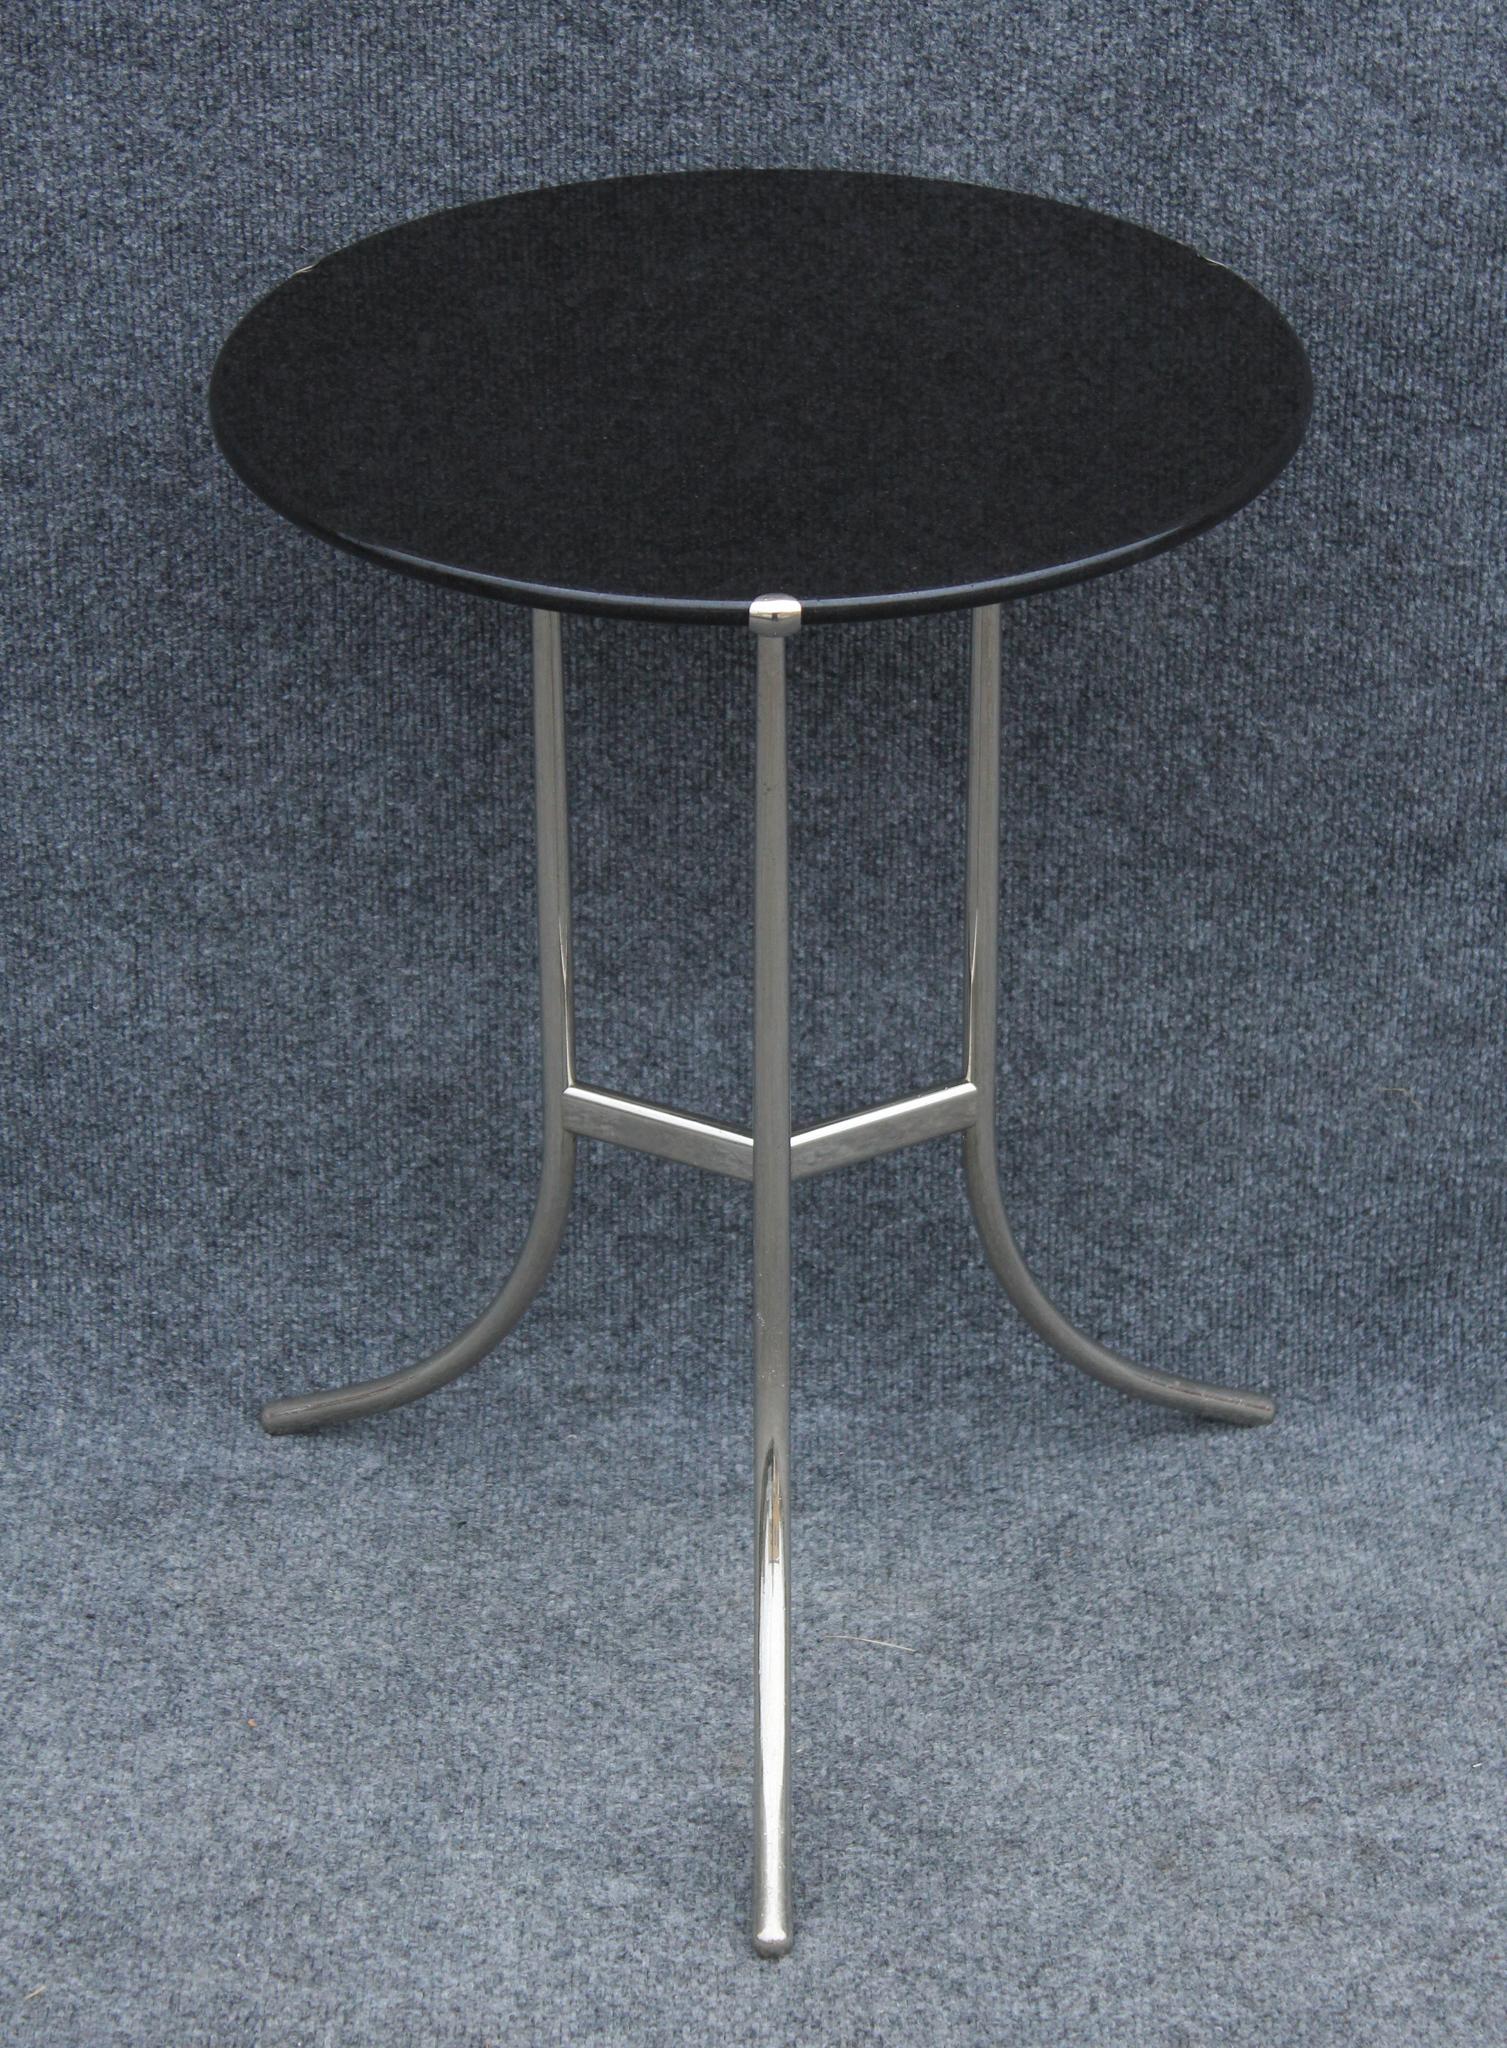 Dieser in den 1970er Jahren hergestellte Tisch wurde von dem Architekten und Designer Cedric Hartman entworfen. Zu Beginn seiner Karriere machte er sich mit der ikonischen Stehleuchte 1UWV einen Namen, doch schon bald wurde er für seine extrem hohe